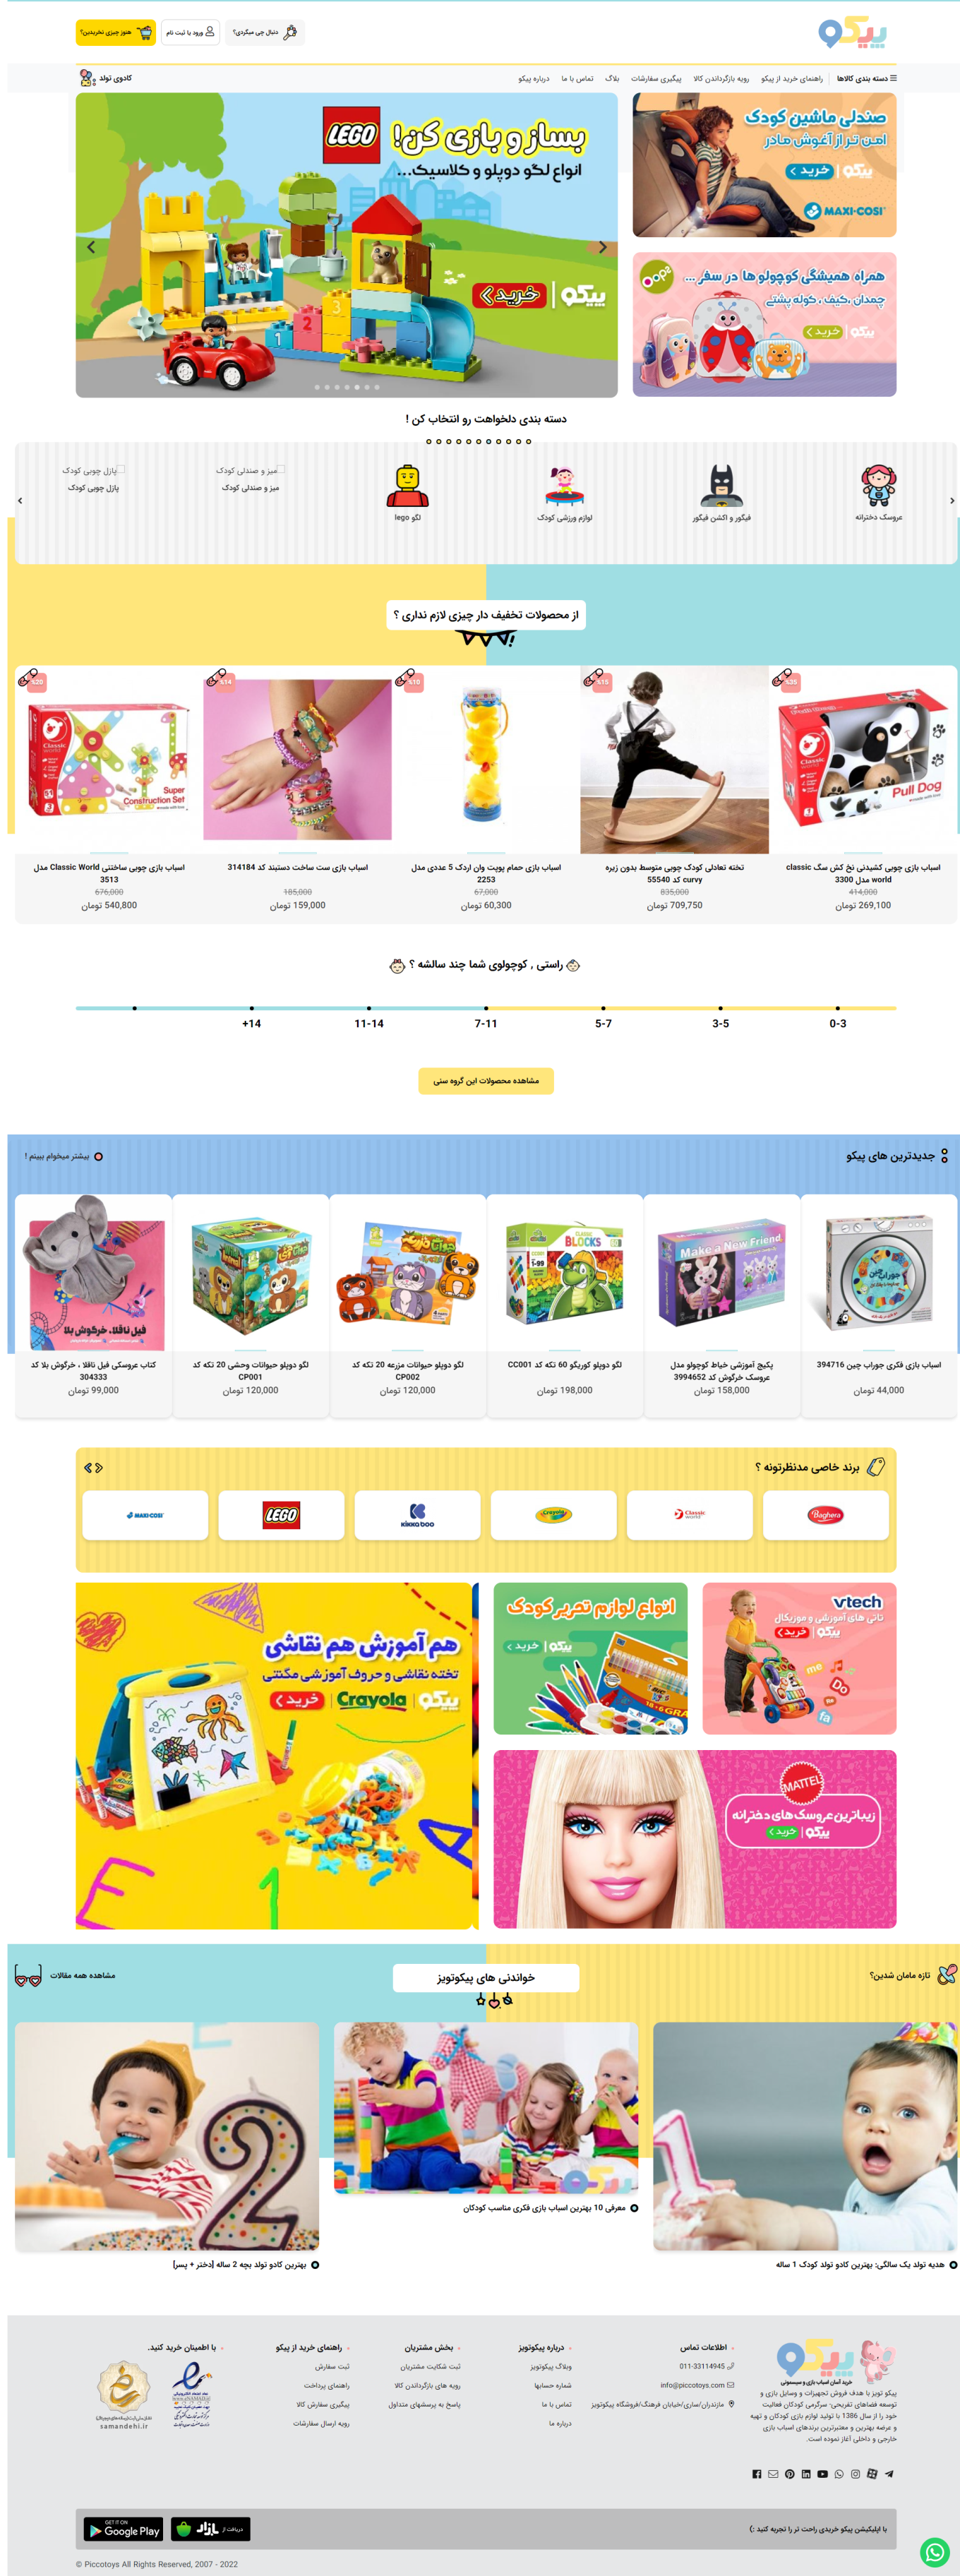 طراحی خرید اسباب بازی آنلاین: فروشگاه اسباب بازی اینترنتی کودک